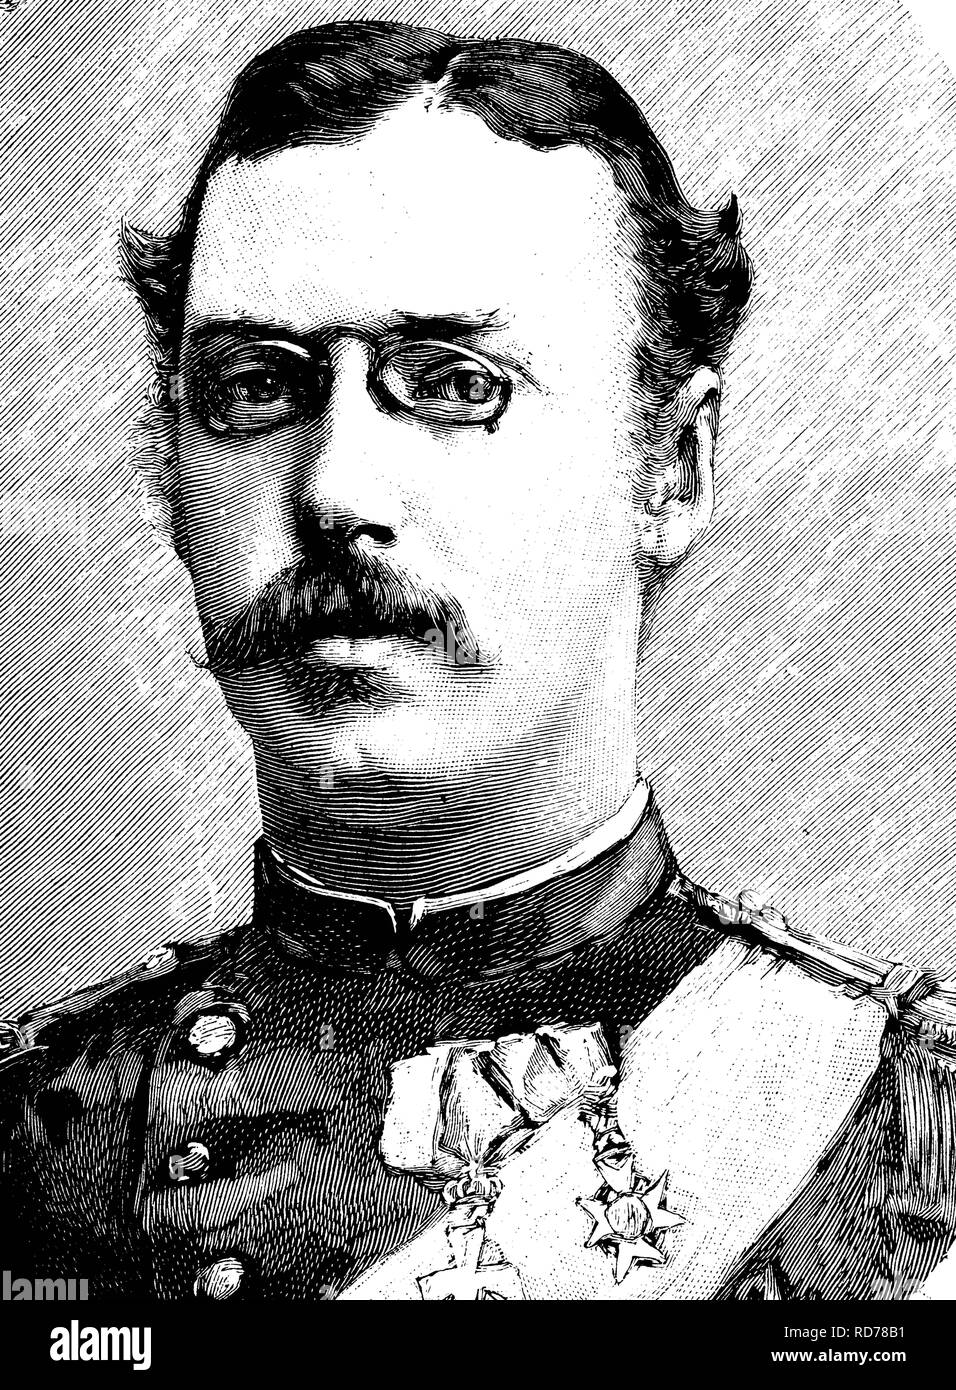 Le prince Waldemar de Danemark (1858-1939), illustration historique, vers 1886 Banque D'Images